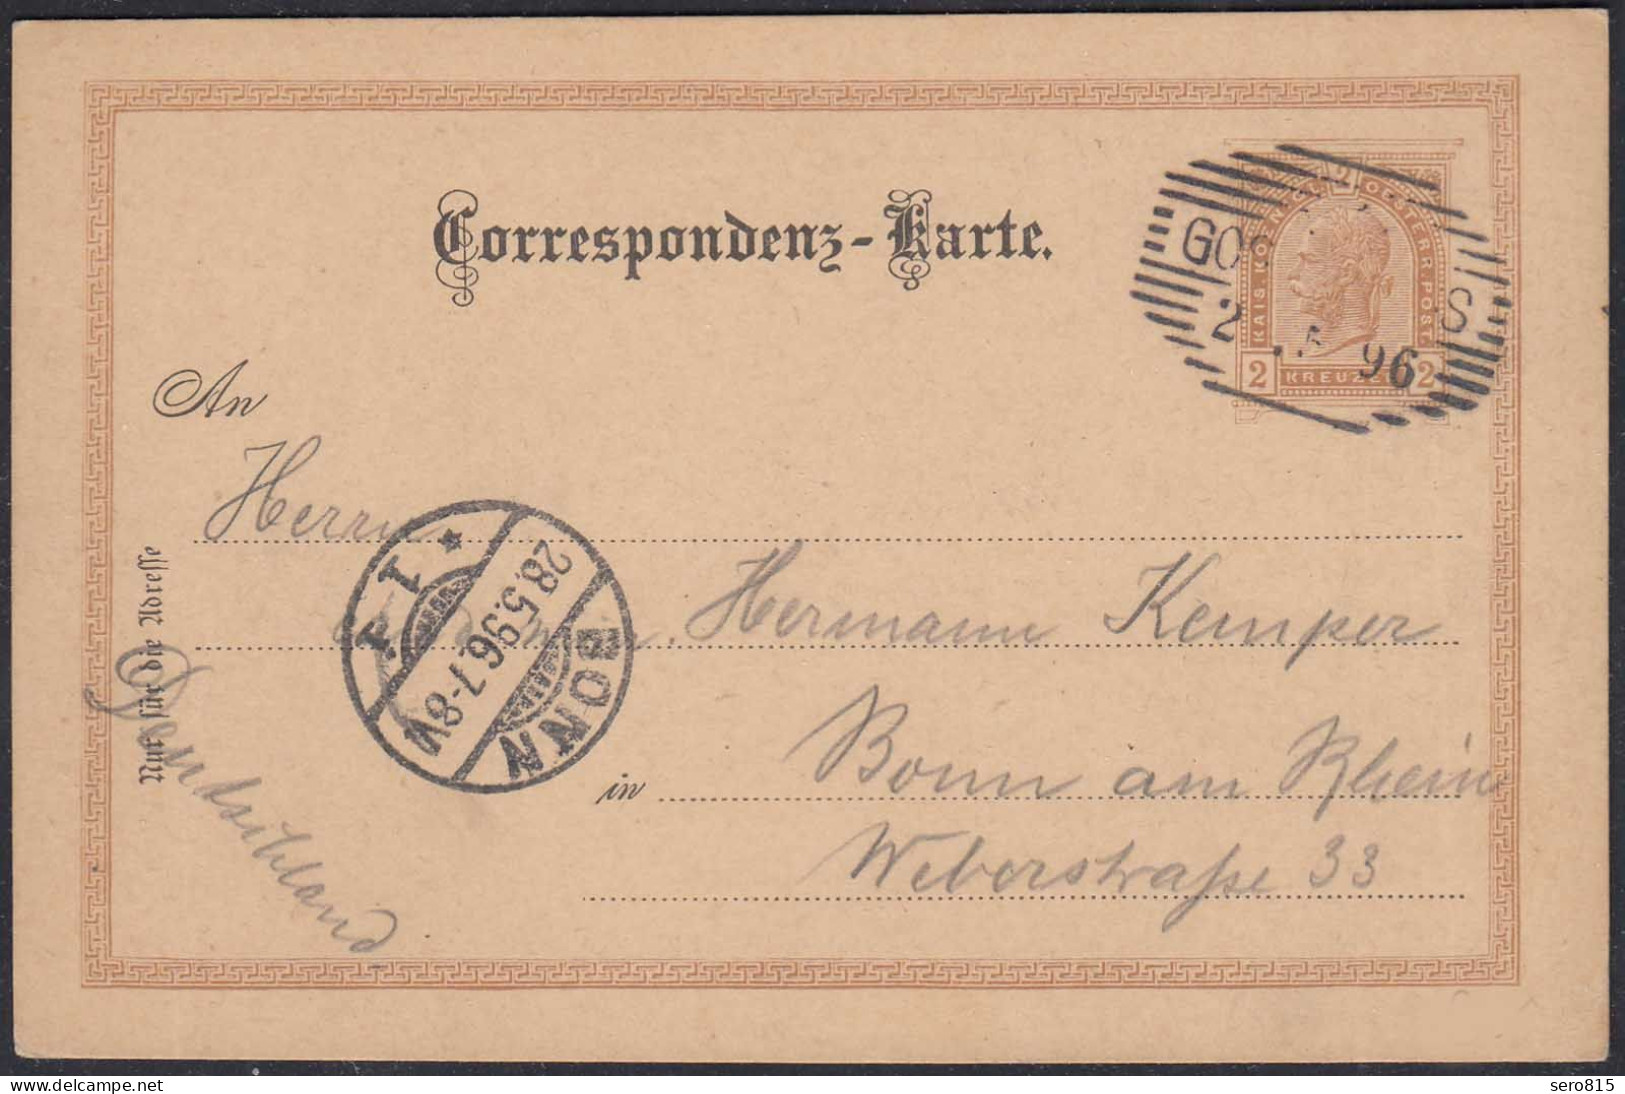 Österreich - Austria 1896 Correspondenz-Karte Ganzsache 2 Kreuzer  (27877 - Covers & Documents